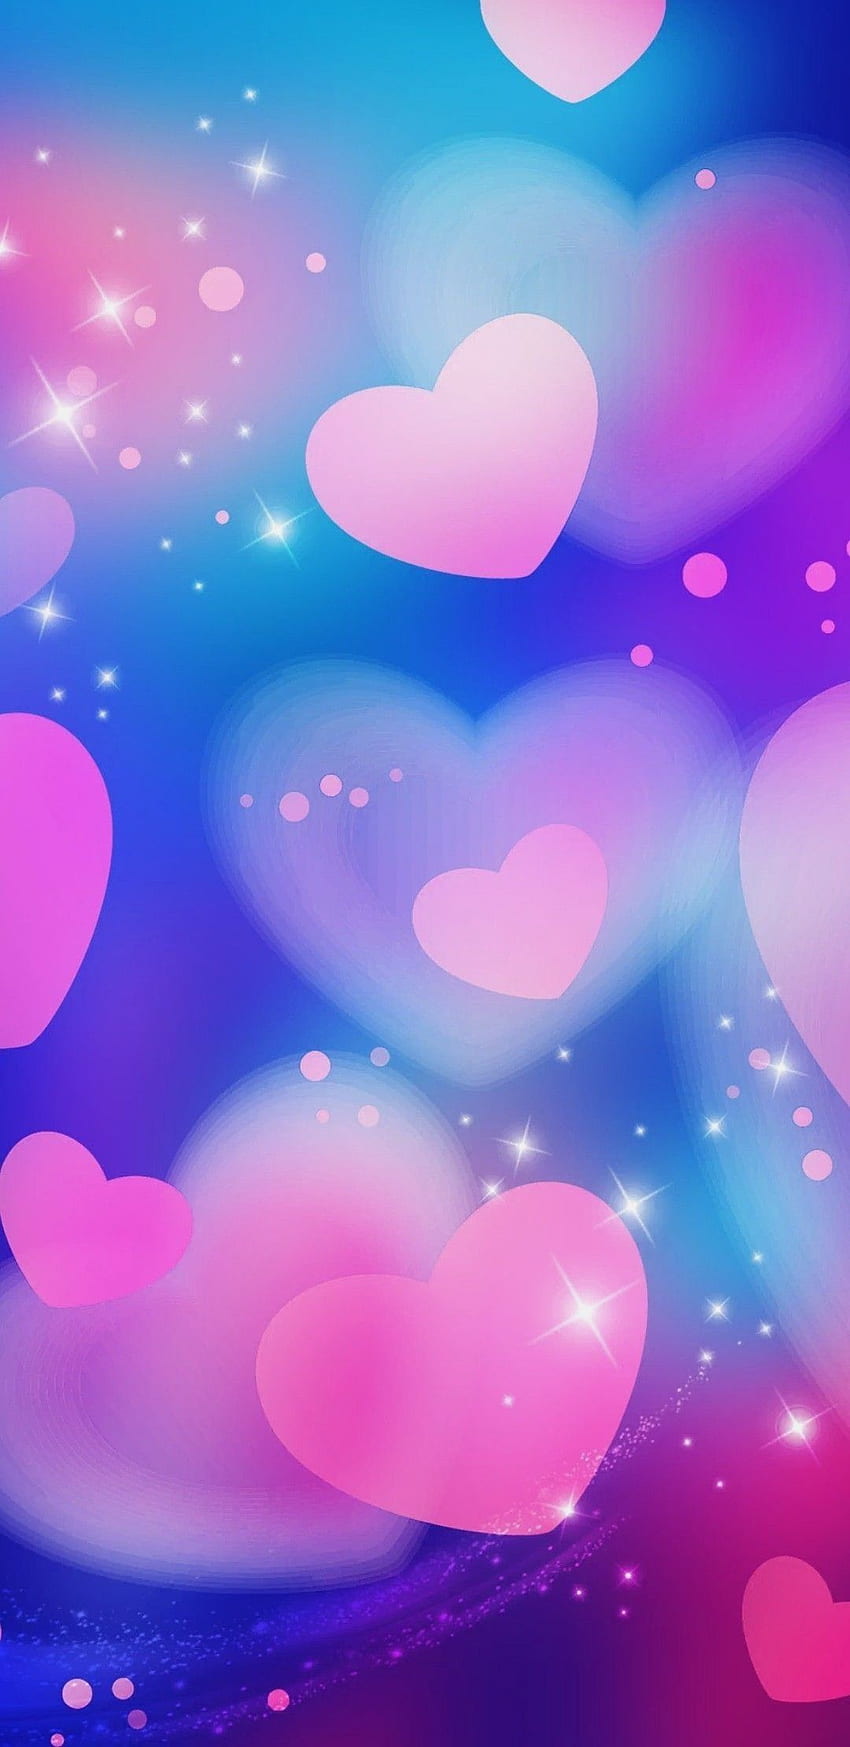 Hãy chọn cho ngày Valentine của bạn một hình nền Galaxy tuyệt đẹp để tạo cảm hứng cho tình yêu của bạn. Ảnh có màu sắc đầy mê hoặc và lấp lánh tạo nên một không khí lãng mạn đầy khát khao. Nhấn vào hình ảnh và thưởng thức trọn vẹn vẻ đẹp của Galaxy đang bừng sáng.